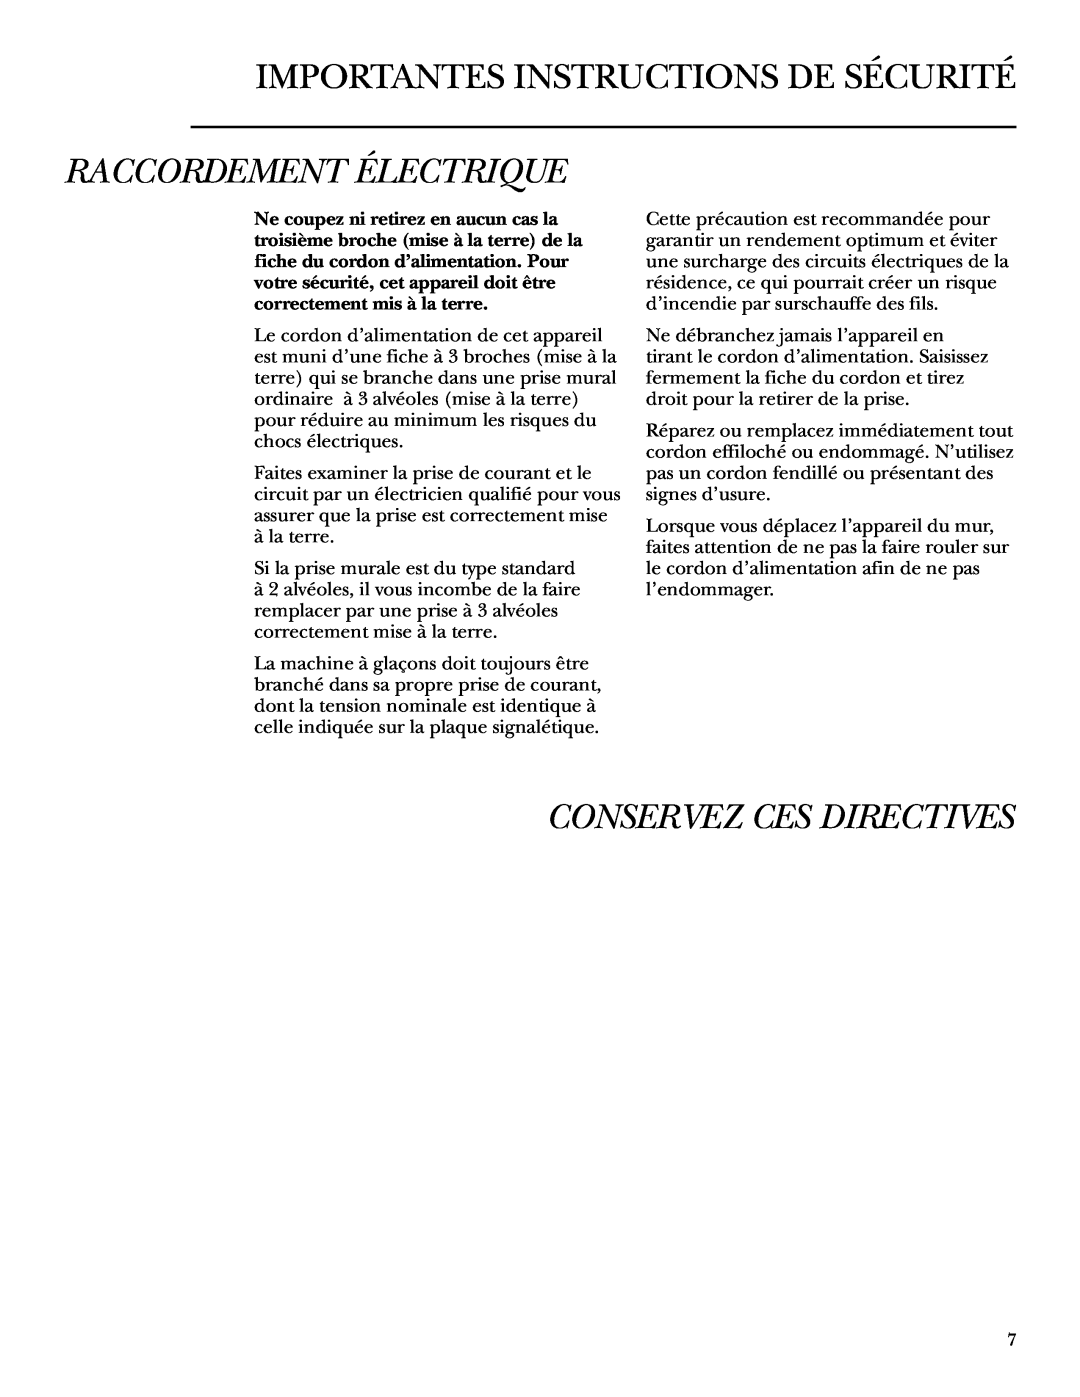 GE ZDWR240 owner manual Raccordement Électrique, Conservez Ces Directives, Importantes Instructions De Sécurité 